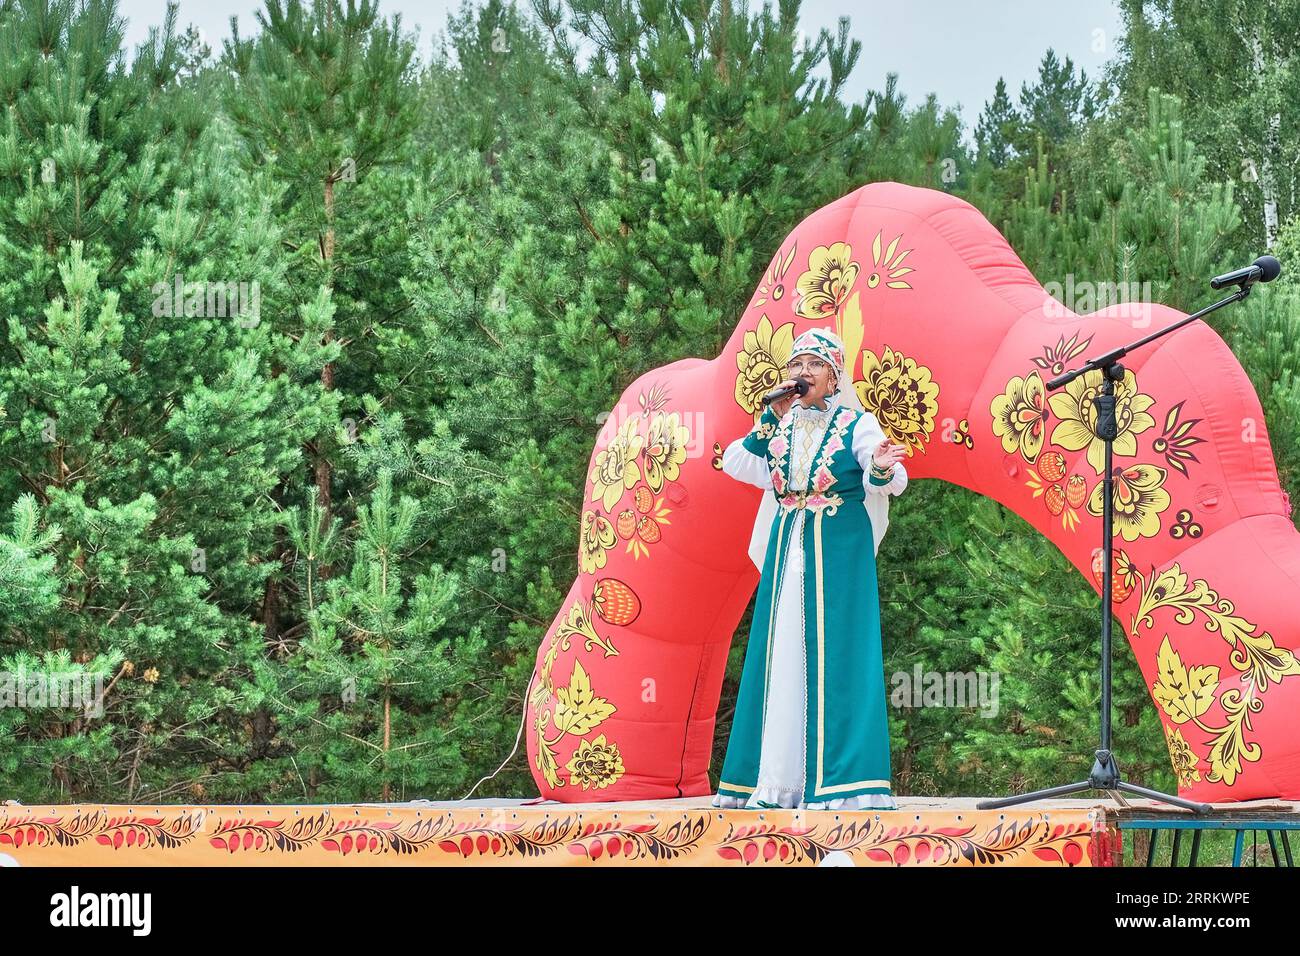 Femme asiatique mature dans des vêtements stylisés de Tatars ethniques, se produisant sur scène. Fête du village. Jour de la petite patrie, Sibérie, Russie Banque D'Images